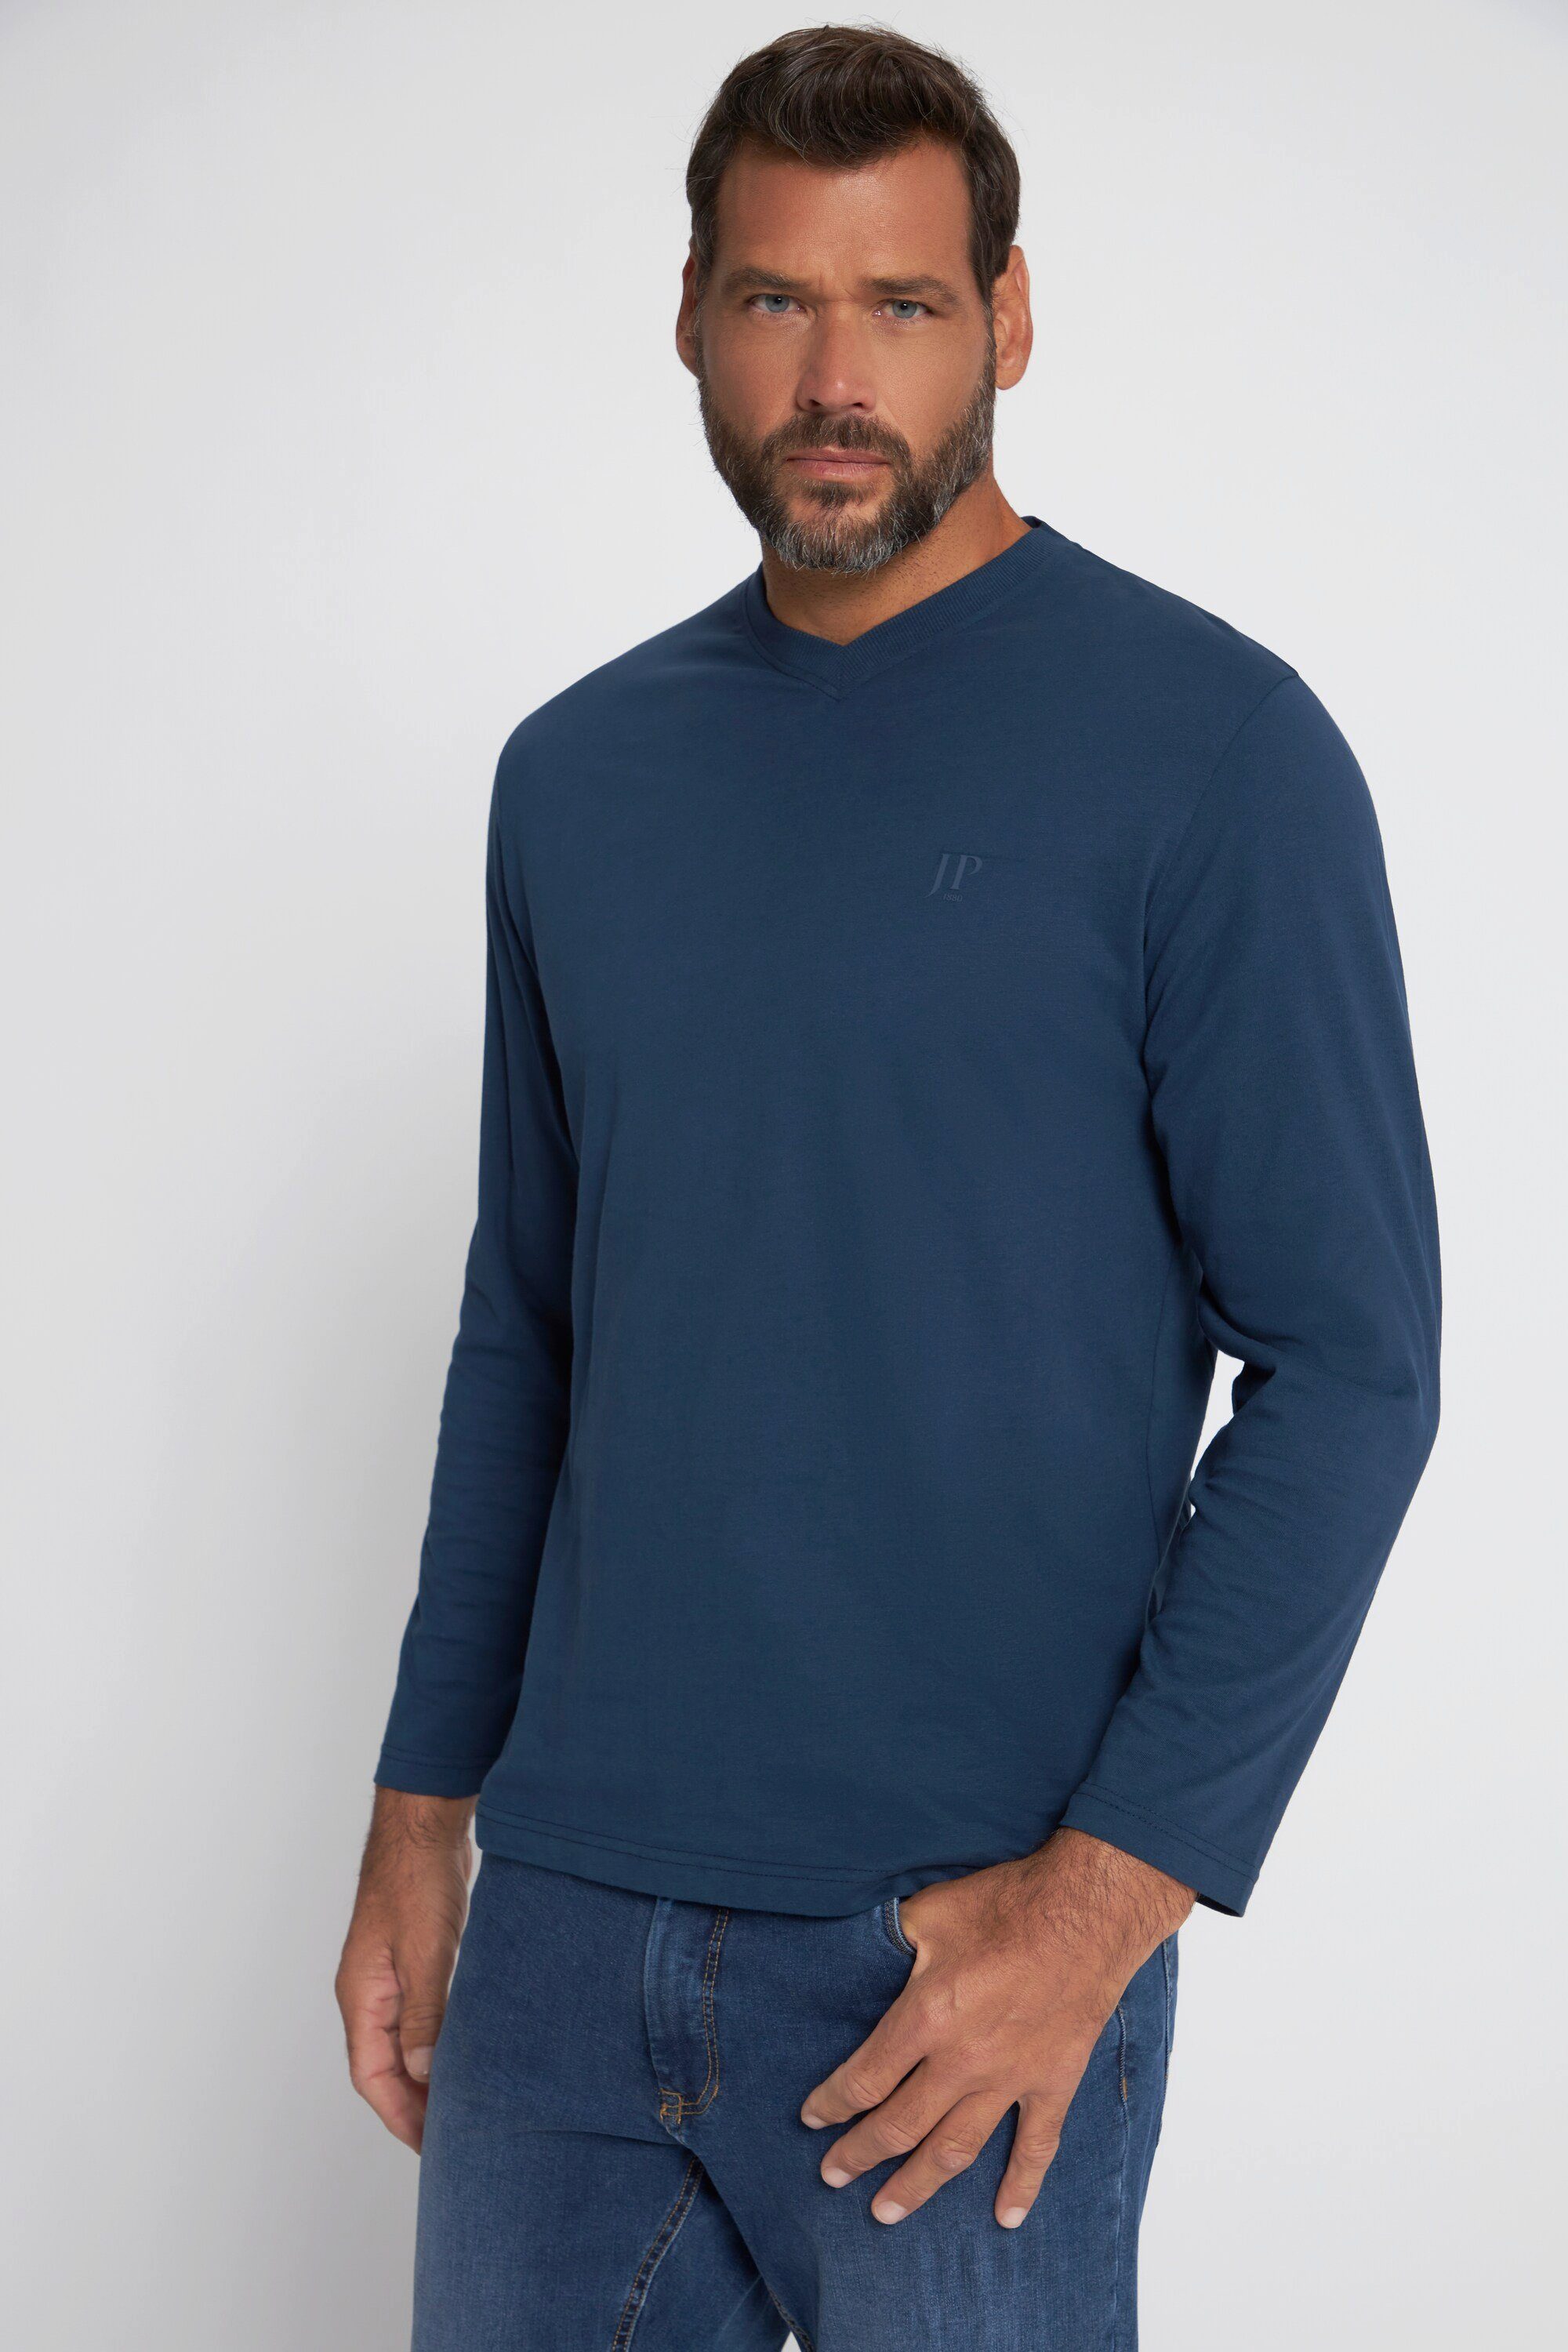 JP1880 T-Shirt T-Shirt Langarm V-Ausschnitt bis 8 XL mattes nachtblau